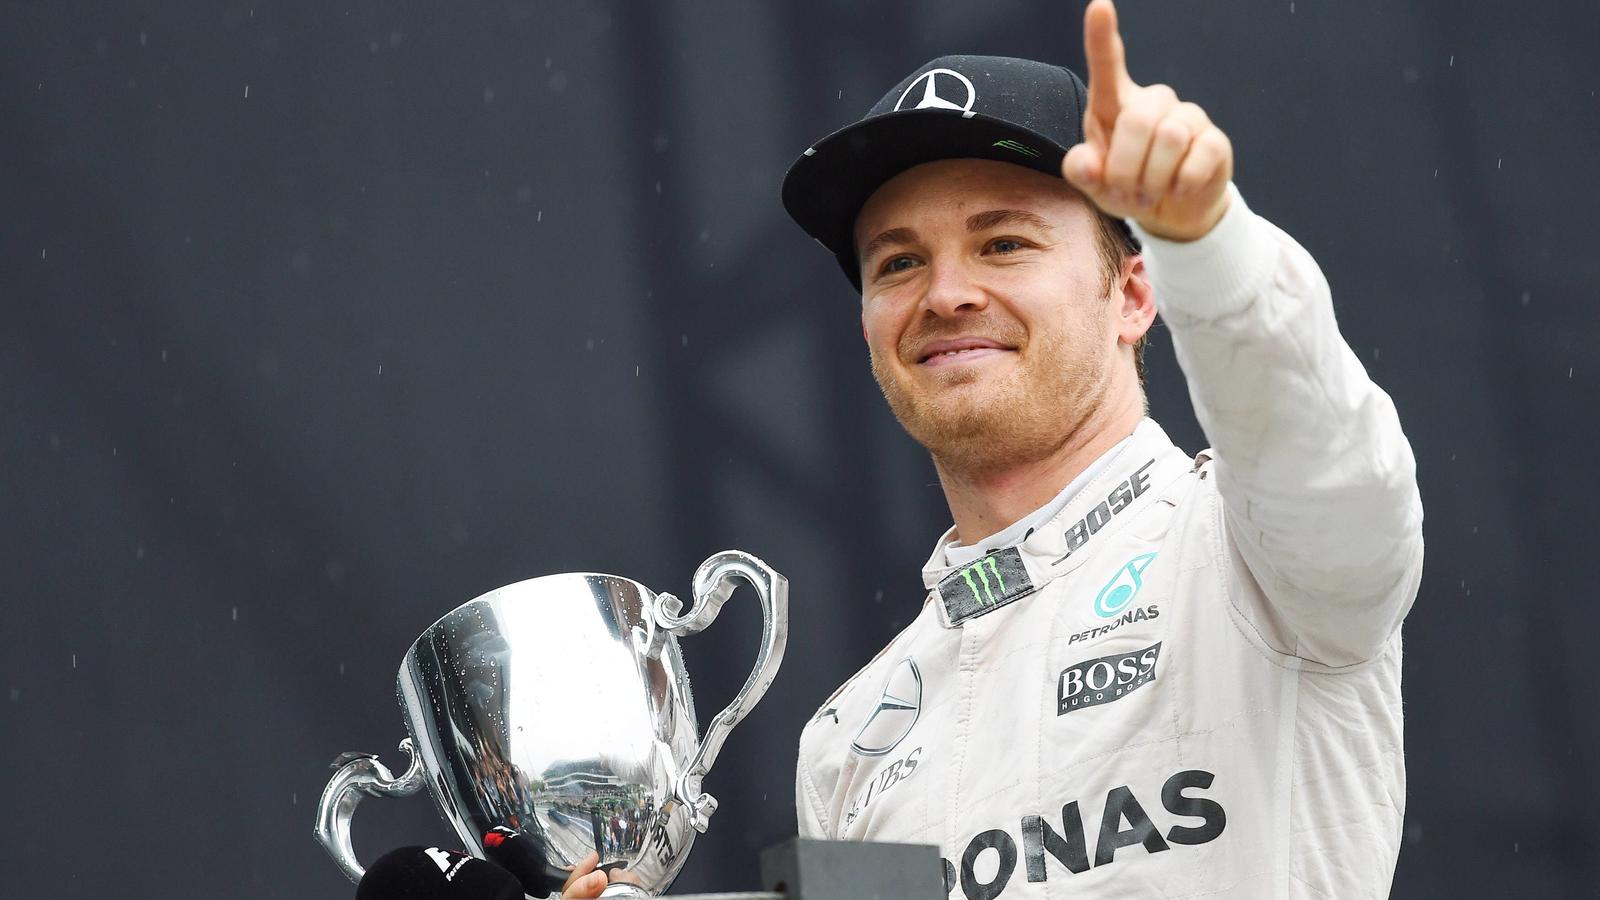 Formel 1 Nico Rosberg will den Grand Prix von Abu Dhabi gewinnen und